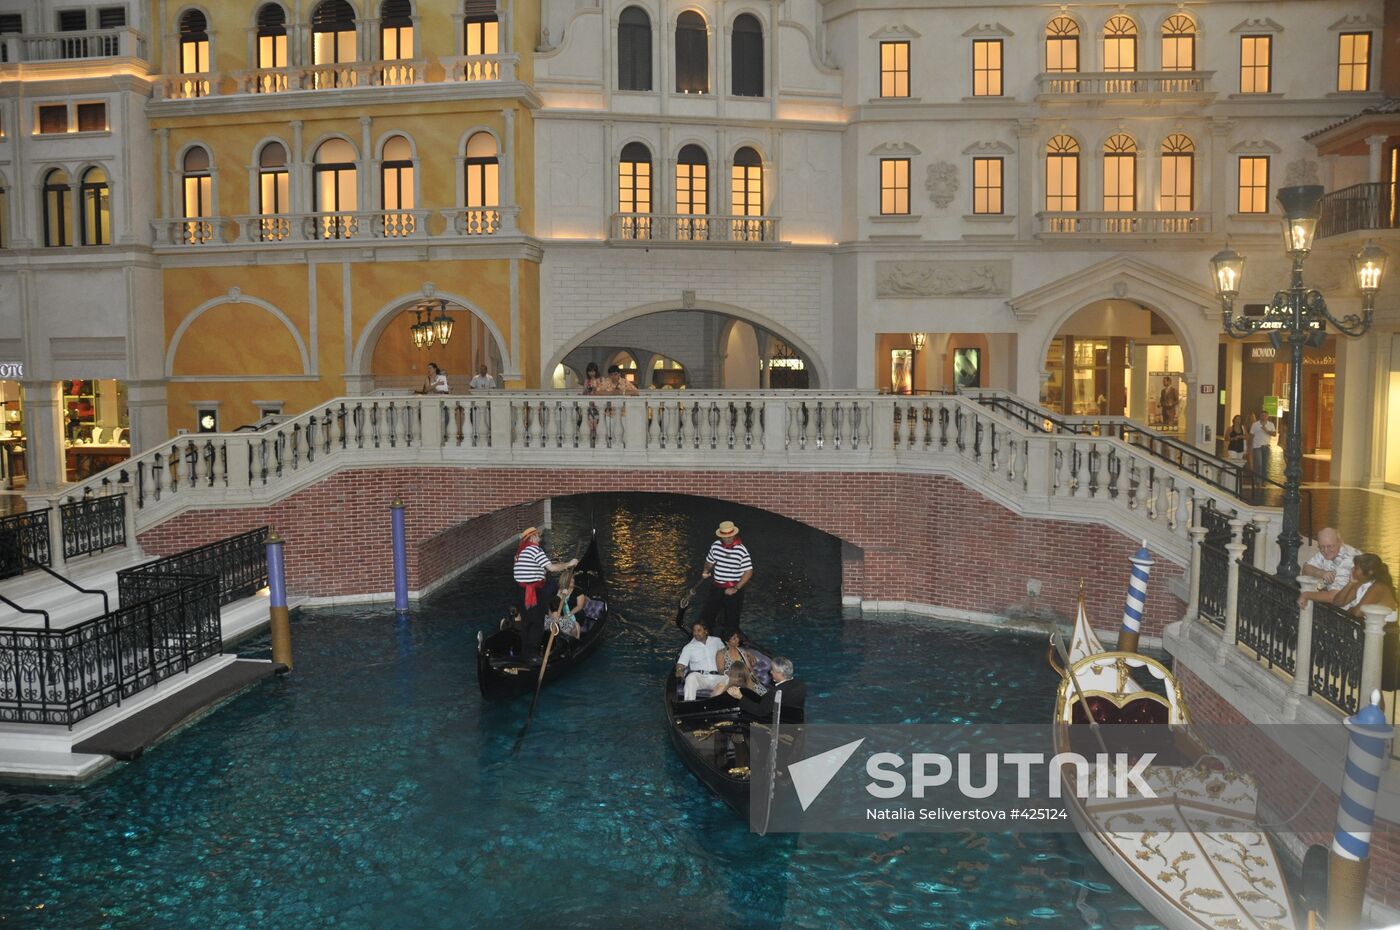 The Venetian Resort, Hotel & Casino